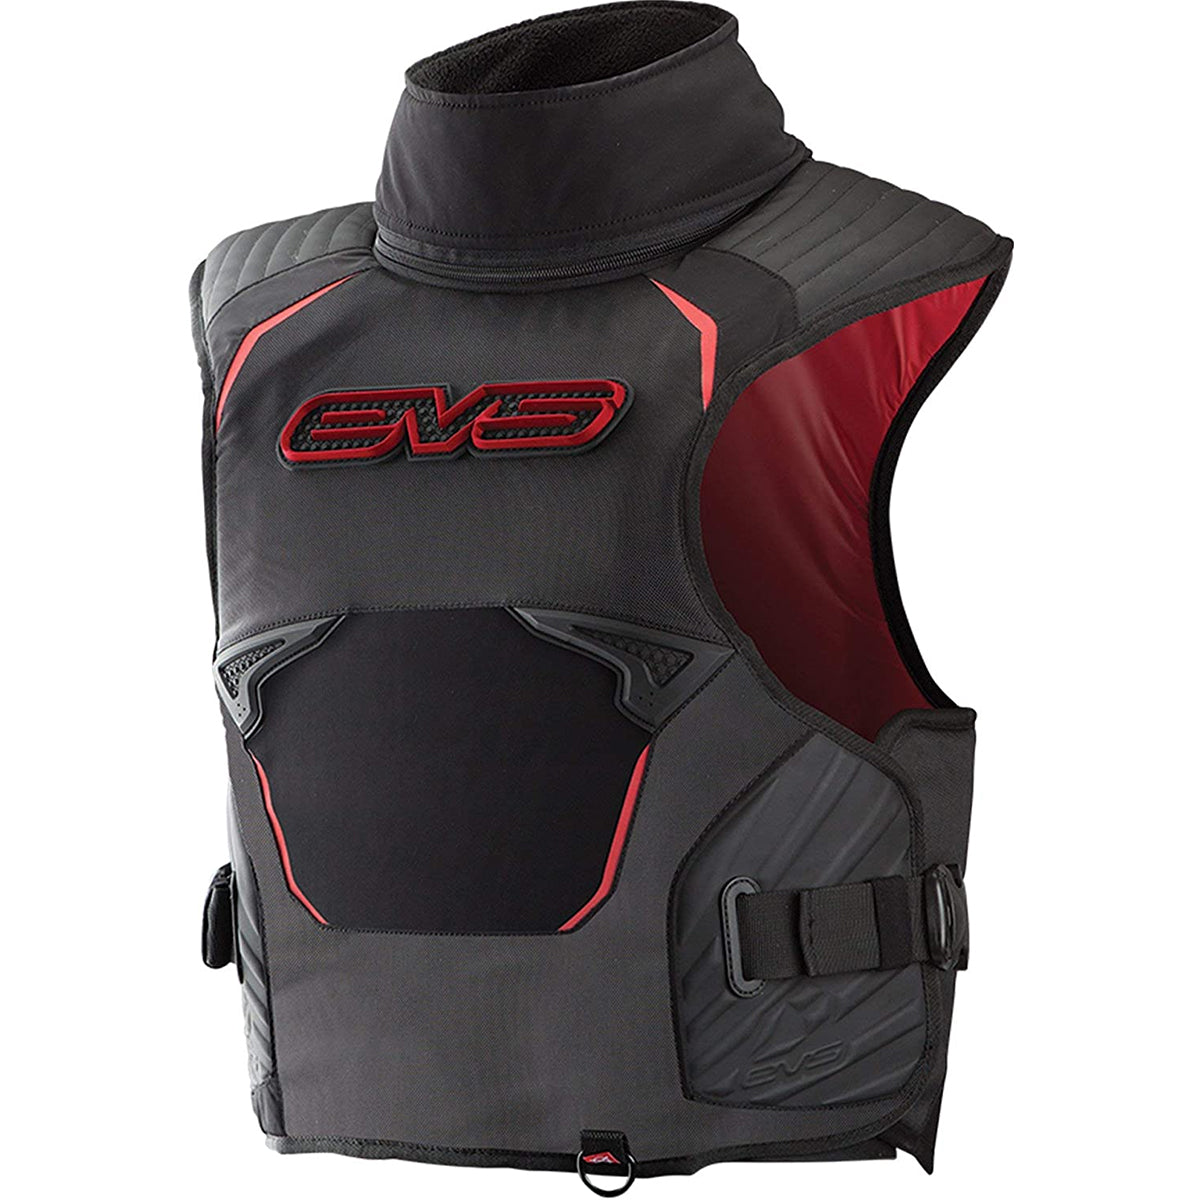 EVS SB03 Shoulder Brace - Adult Body Armour